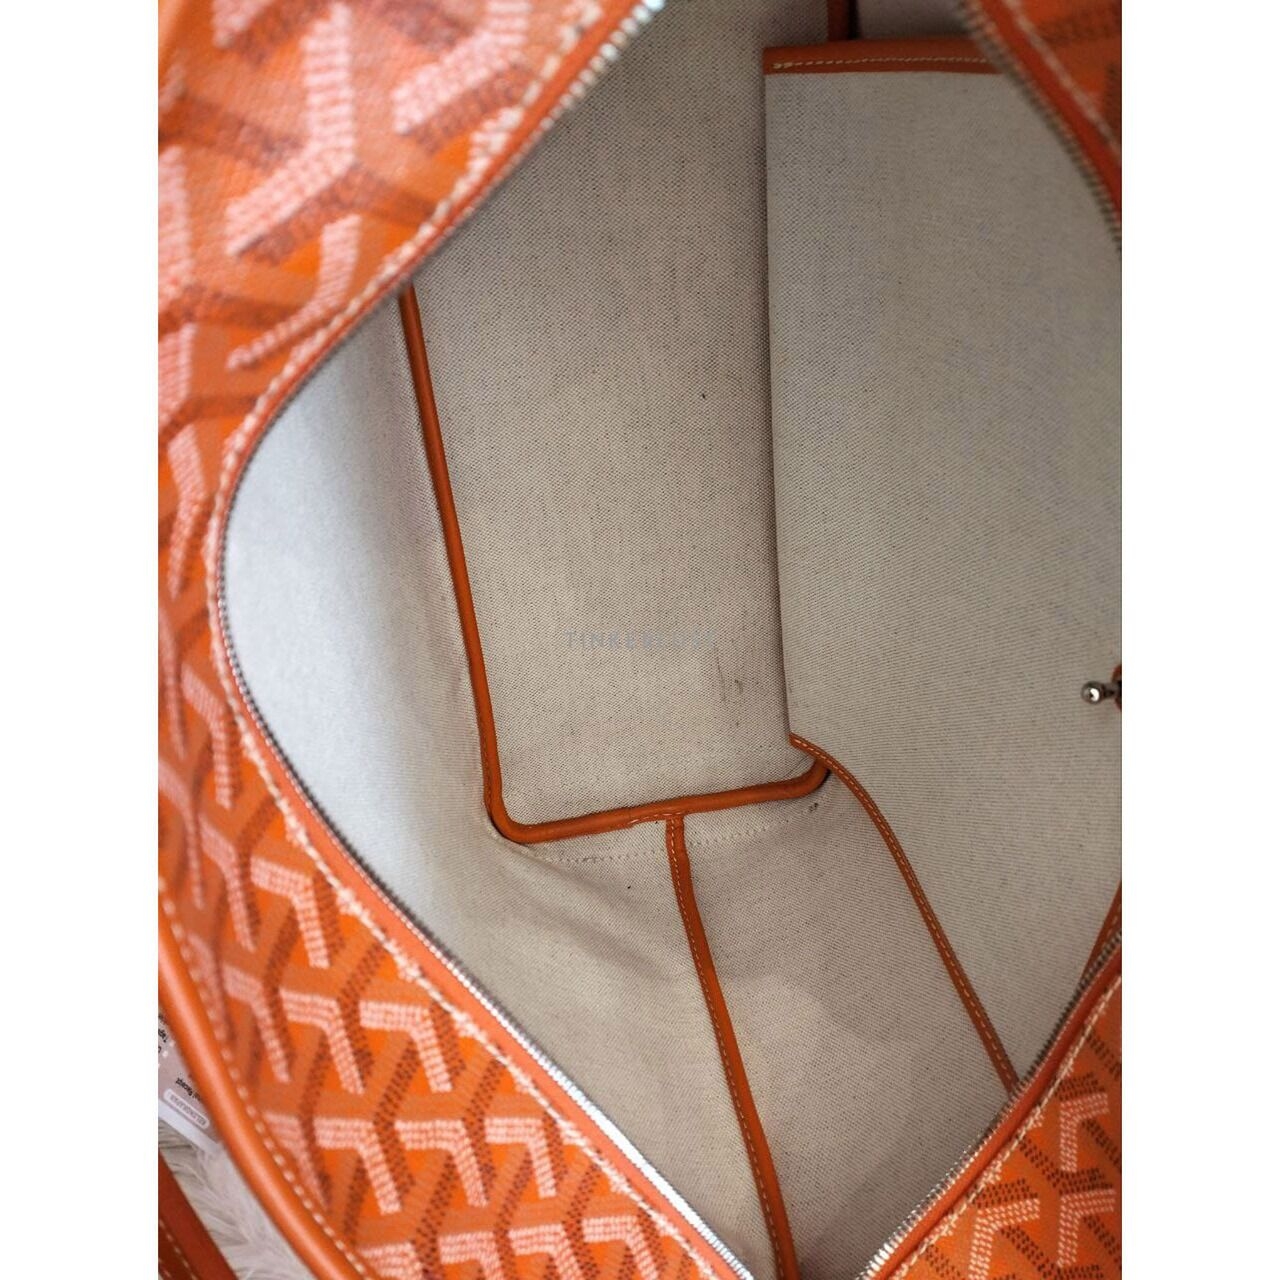 Goyard Artois in Orange 2018 Tote Bag